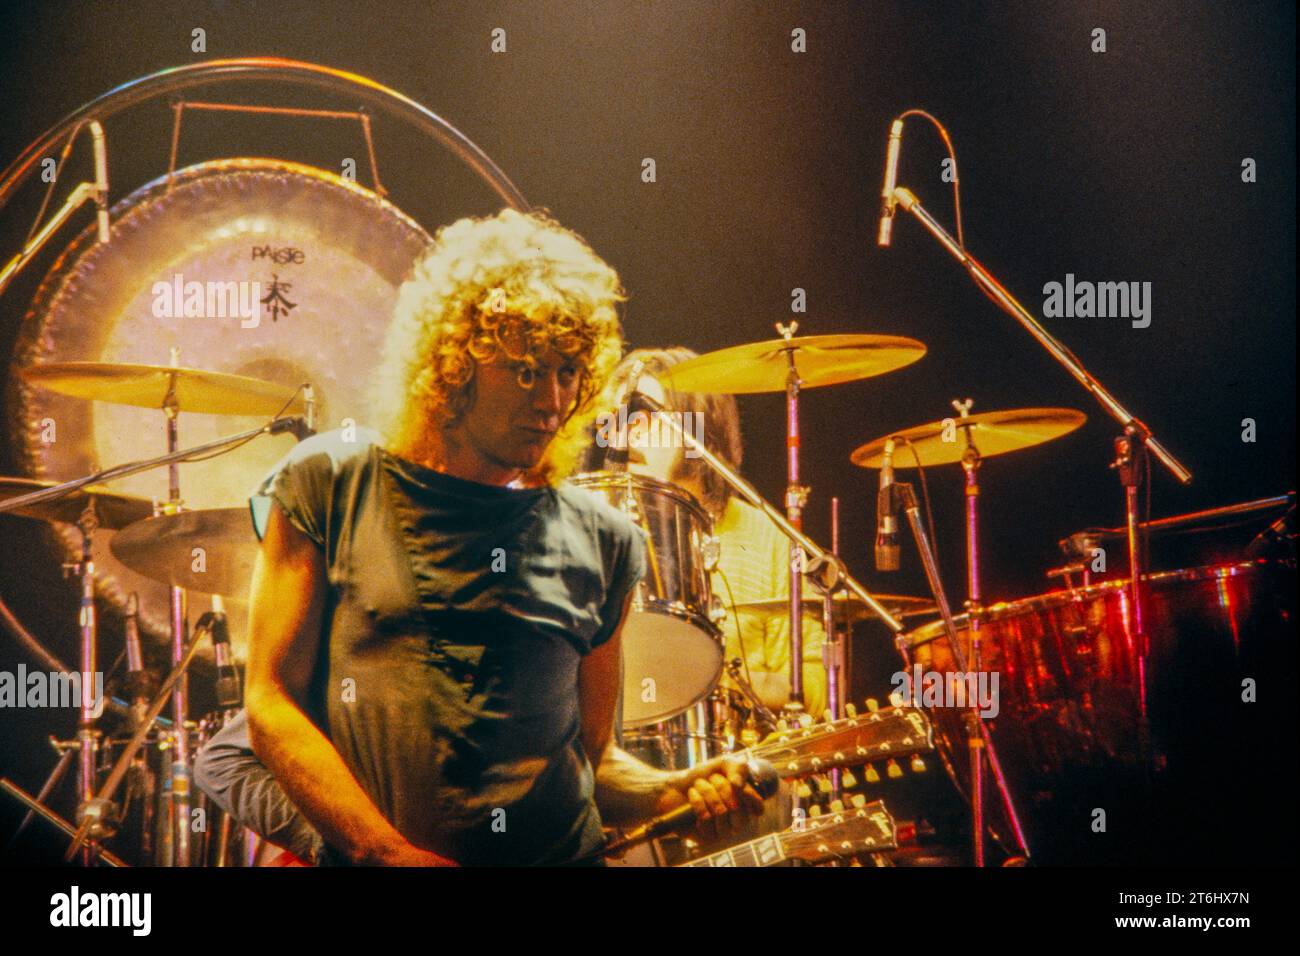 LED Zeppelin, ultimo concerto del tour europeo 1980, Berlino-Eissporthalle. L'ultimo concerto con il batterista John Bonham, morto poco dopo. Foto Stock